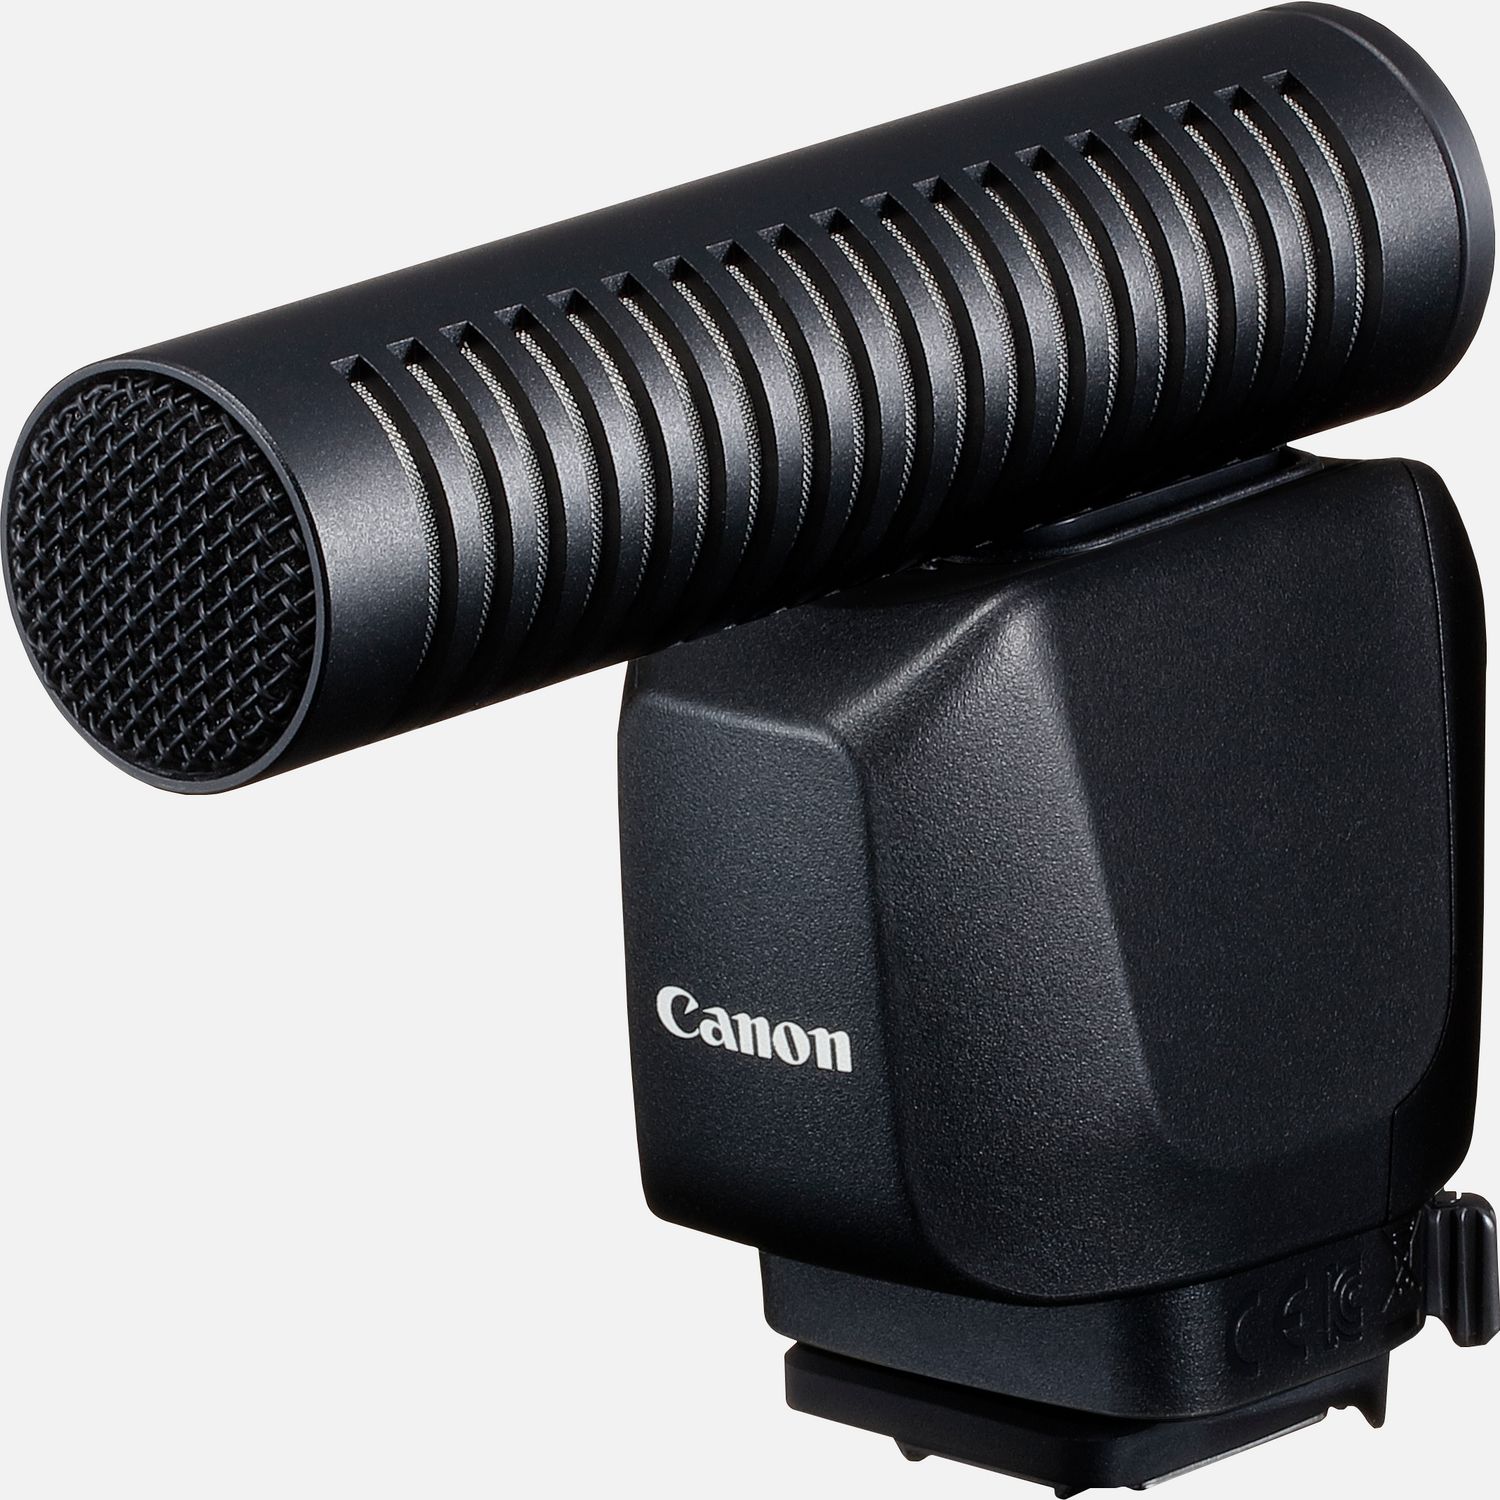 Bringe deine Tonaufnahmen der EOSR3 ins digitale Zeitalter mit klarem Sound von einem Mikrofon fr den Multifunktions-Zubehrschuh von Canon, das bei einfacher Bedienung eine zuverlssige Leistung bringt. Und da es direkt von der Kamera mit Strom versorgt wird, braucht es auch keine Batterien. Das digitale Signal sogt fr klare Tonaufnahmen. Dafr wird das Canon DM-E1D Richtmikrofon einfach auf den Multifunktions-Zubehrschuh der EOSR3 aufgesteckt und ist so zuverlssig und sicher verbunden du kannst dich ganz auf den Moment konzentrieren.  Vorteile      Die digitale Signalverarbeitung sorgt fr ein reineres, klareres Audiosignal und ermglicht ein reichhaltigeres Klangerlebnis mit Tonaufnahmen, die das Publikum mitten ins Geschehen bringt          Fr eine komplett kabellose, zuverlssige und sichere Verbindung wird das Mikrofon einfach auf den Multifunktions-Zubehrschuh kompatibler Kameras aufgesteckt          Du brauchst dir ber Akku- oder Batterieladungen keine Gedanken zu machen das Mikrofon wird direkt von der Kamera mit Strom versorgt          Drei Modi fr die Richtungsabnahme geben dir die Flexibilitt, den Ton ganz nach deinen Vorstellungen aufzunehmen. Du kannst zwischen Shotgun (Mono), 90 oder 120 in Stereo whlen und es so an die unterschiedlichsten Umgebungen anpassen          Wenn du die MENU-Taste am Mikrofon drckst, wird das Men fr die Audioeinstellungen auf dem LC-Display der Kamera angezeigt, worber die schnelle und einfache Bedienung und Steuerung erfolgt          Der Windfilter reduziert den Einfluss von Wind und sorgt dafr, dass die Tonaufnahmen klar und deutlich werden          Lieferumfang       DM-E1D Stereo Richtmikrofon         Windschutz         (Zubehrschuh) Abdeckung         Anleitungen            Kompatibilitt       EOS R3         EOS R7         EOS R10